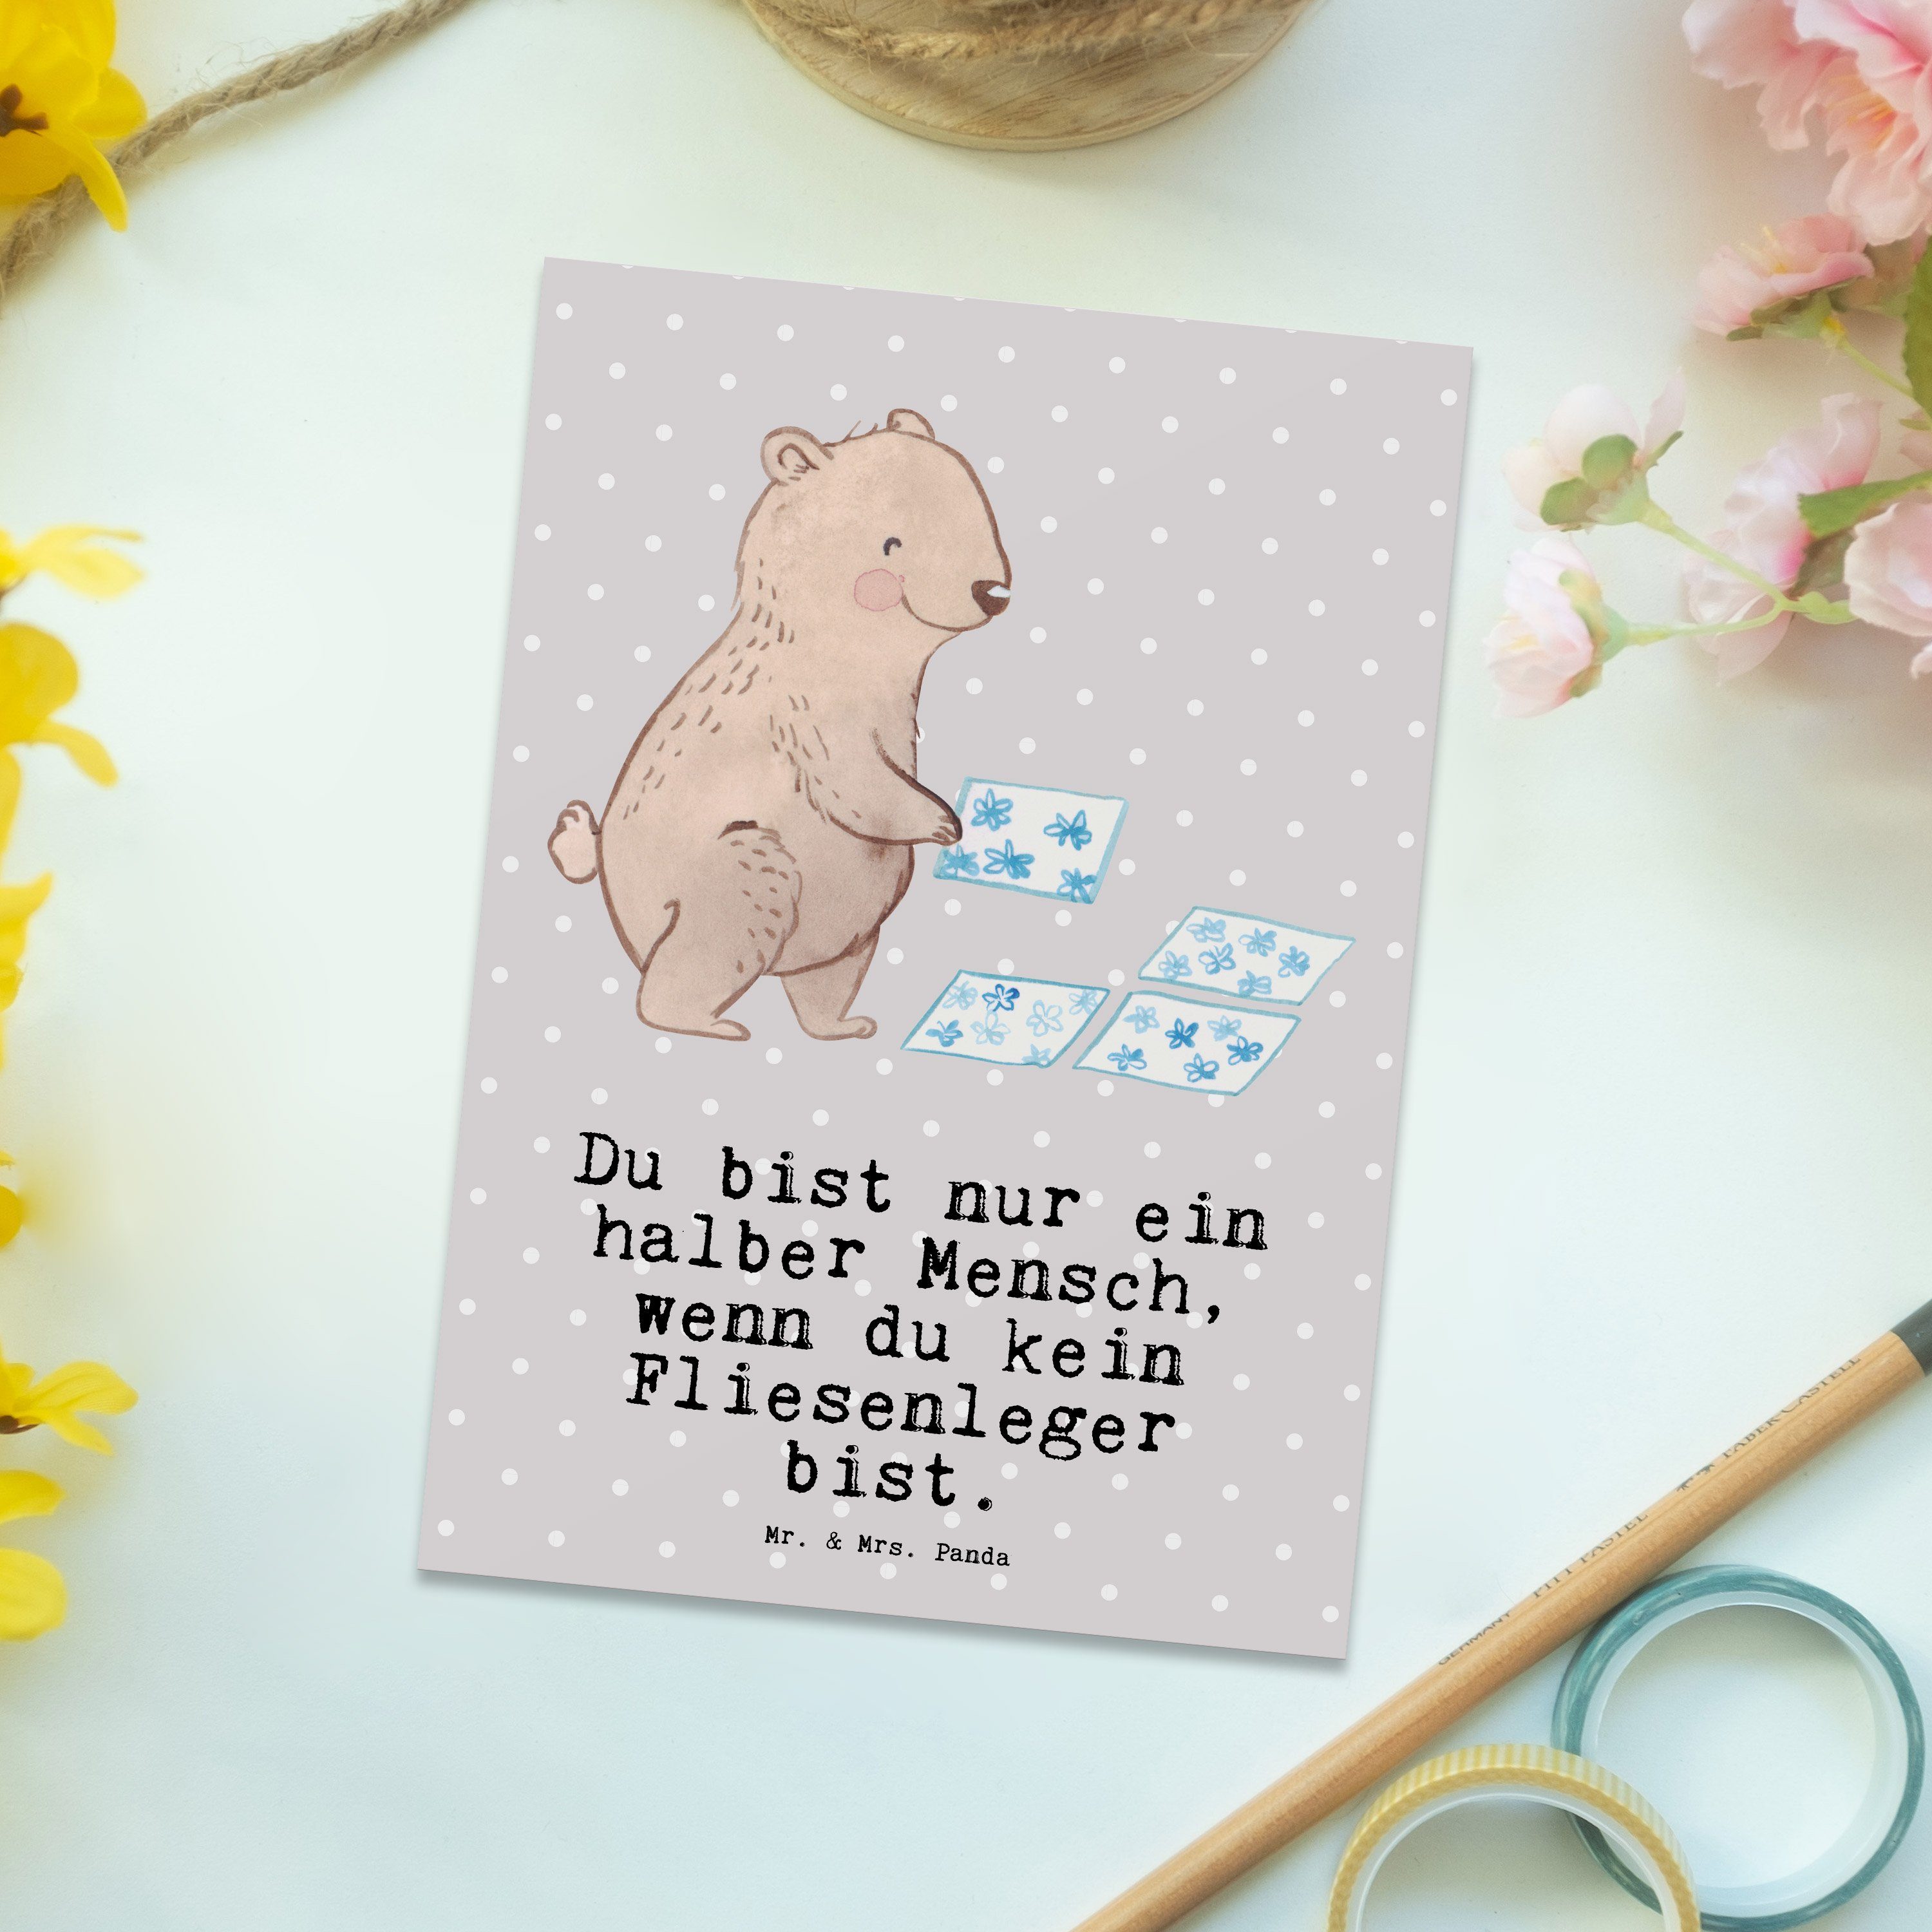 Mr. & Mrs. Panda Postkarte Fliesenleger mit Herz - Grau Pastell - Geschenk, Ausbildung, Karte, F